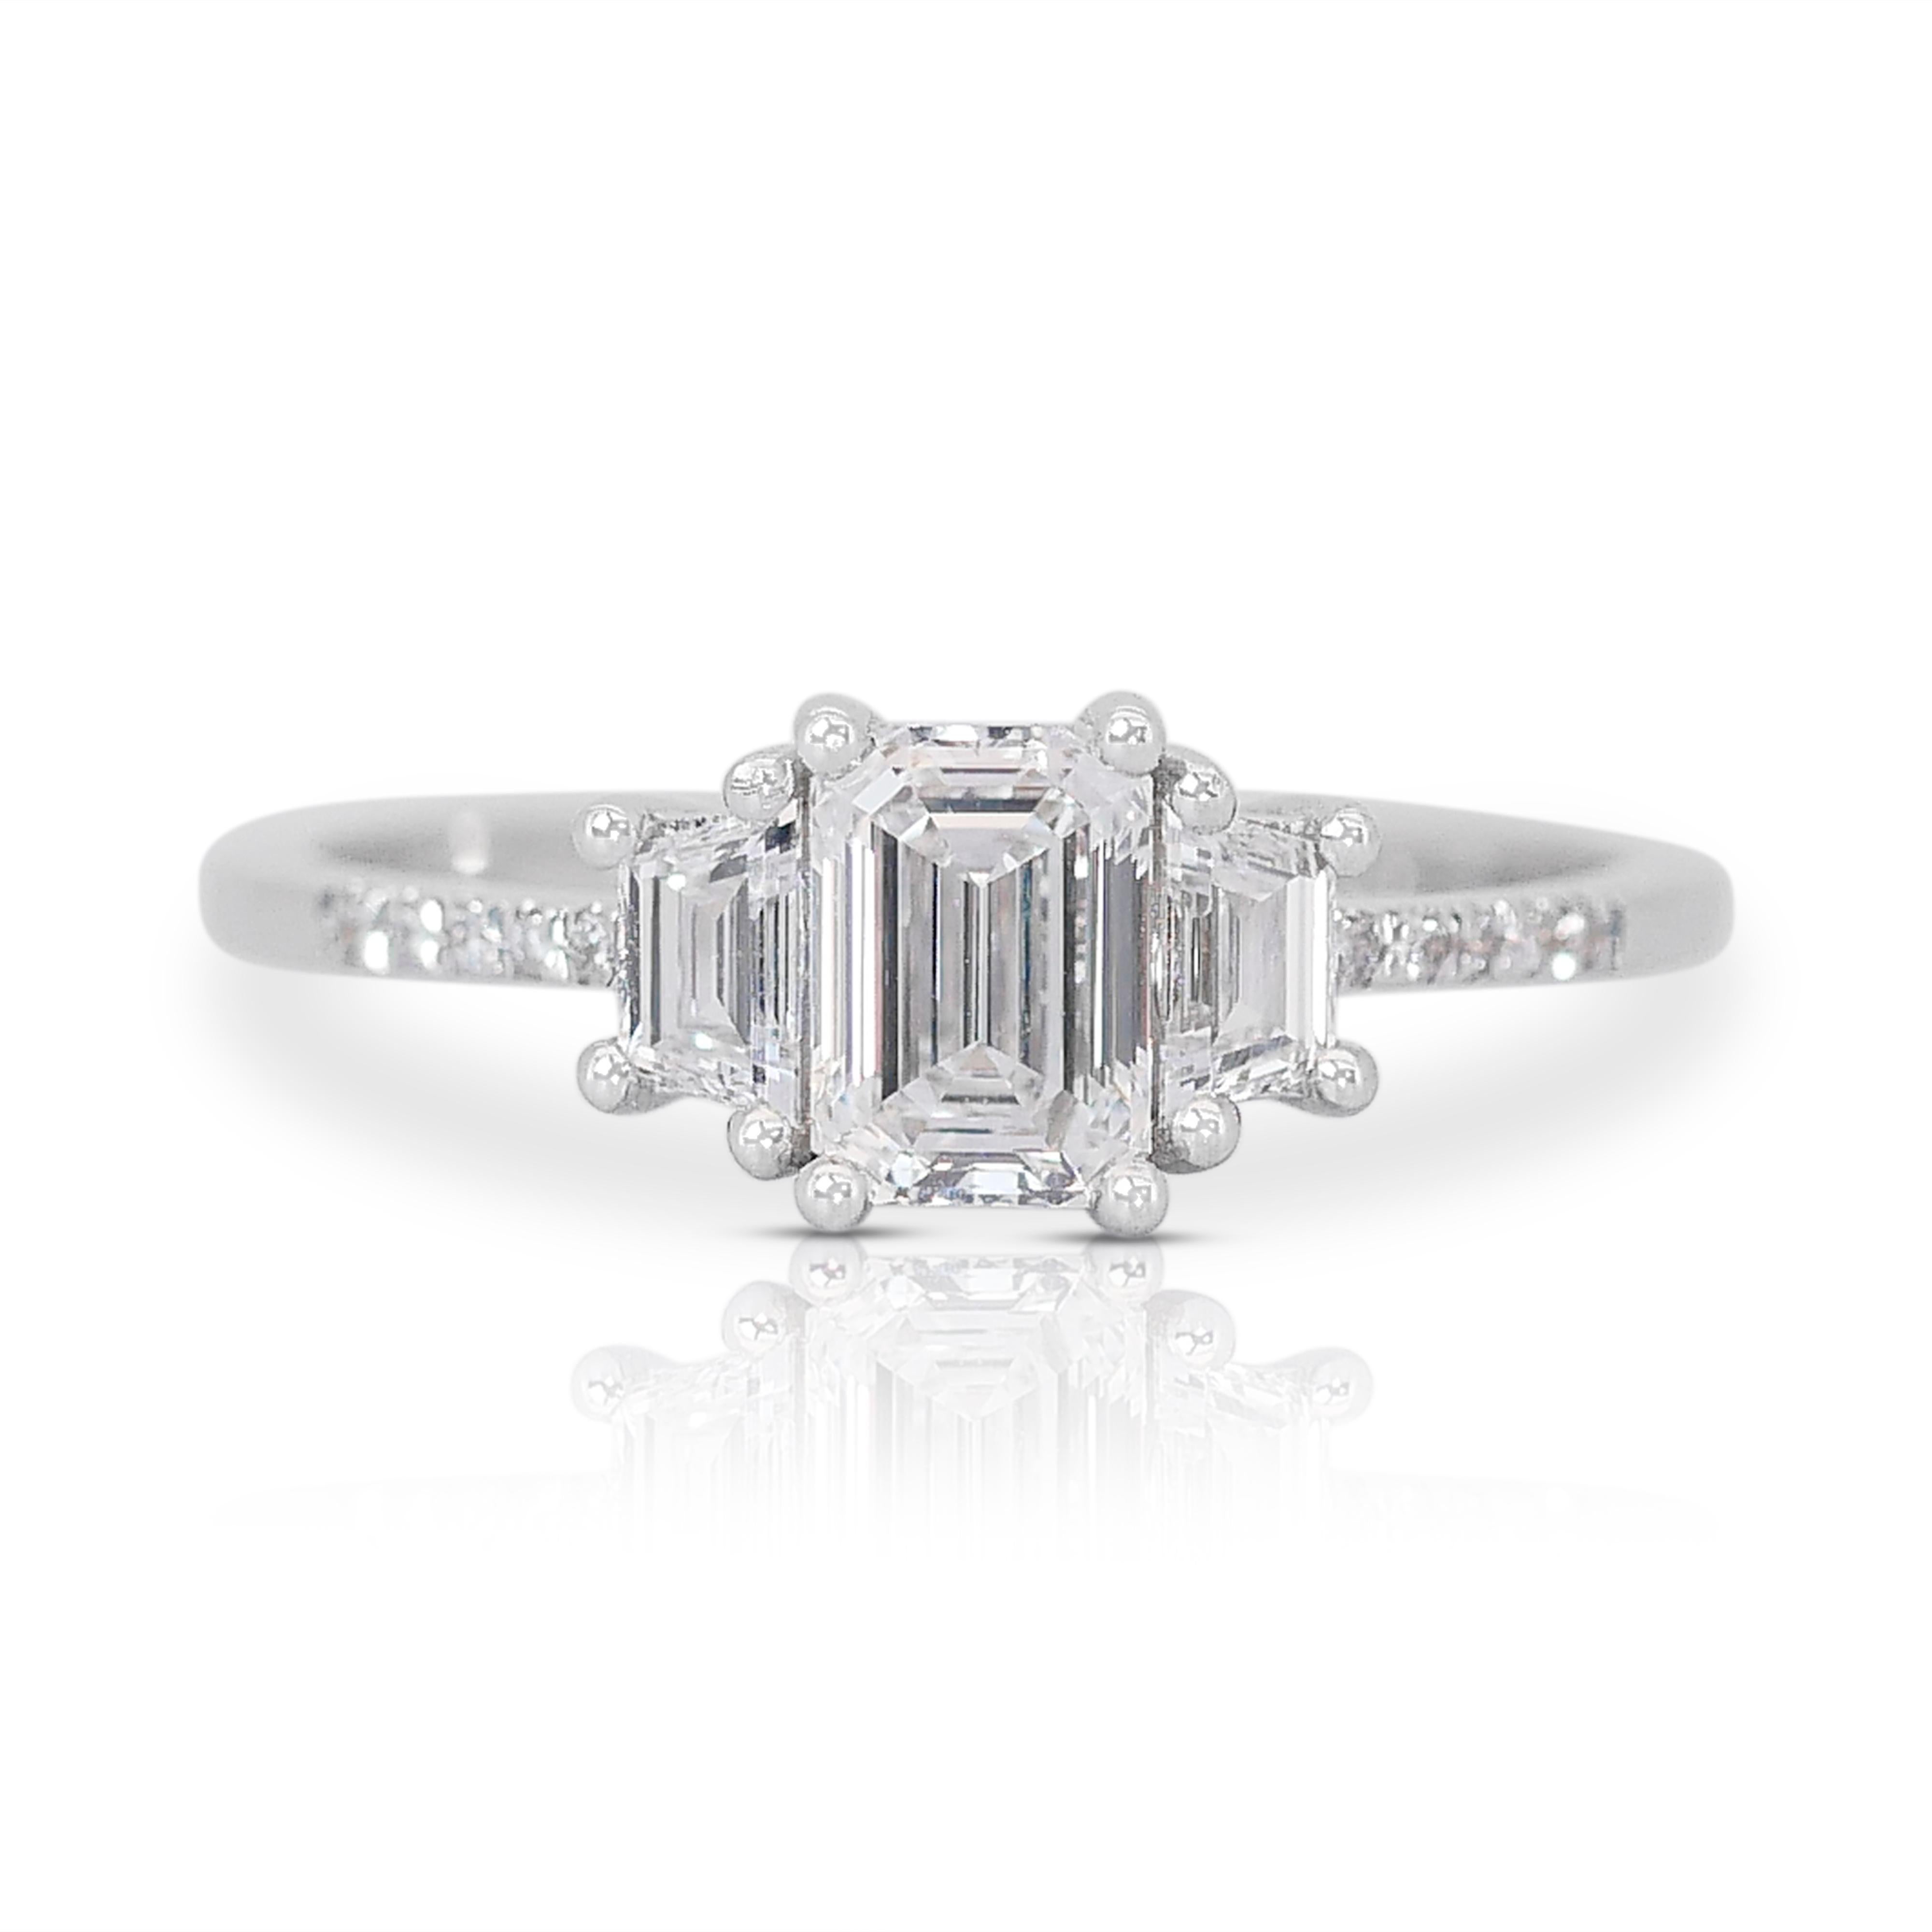 Lustrous 1.22ct Emerald-Cut Diamond 3-Stone Ring in 18K White Gold - GIA Certified (en anglais)

Réalisée en or blanc 18k, cette luxueuse bague à 3 pierres en diamant met en valeur un diamant taille émeraude de 0,91 carat en son centre, symbole